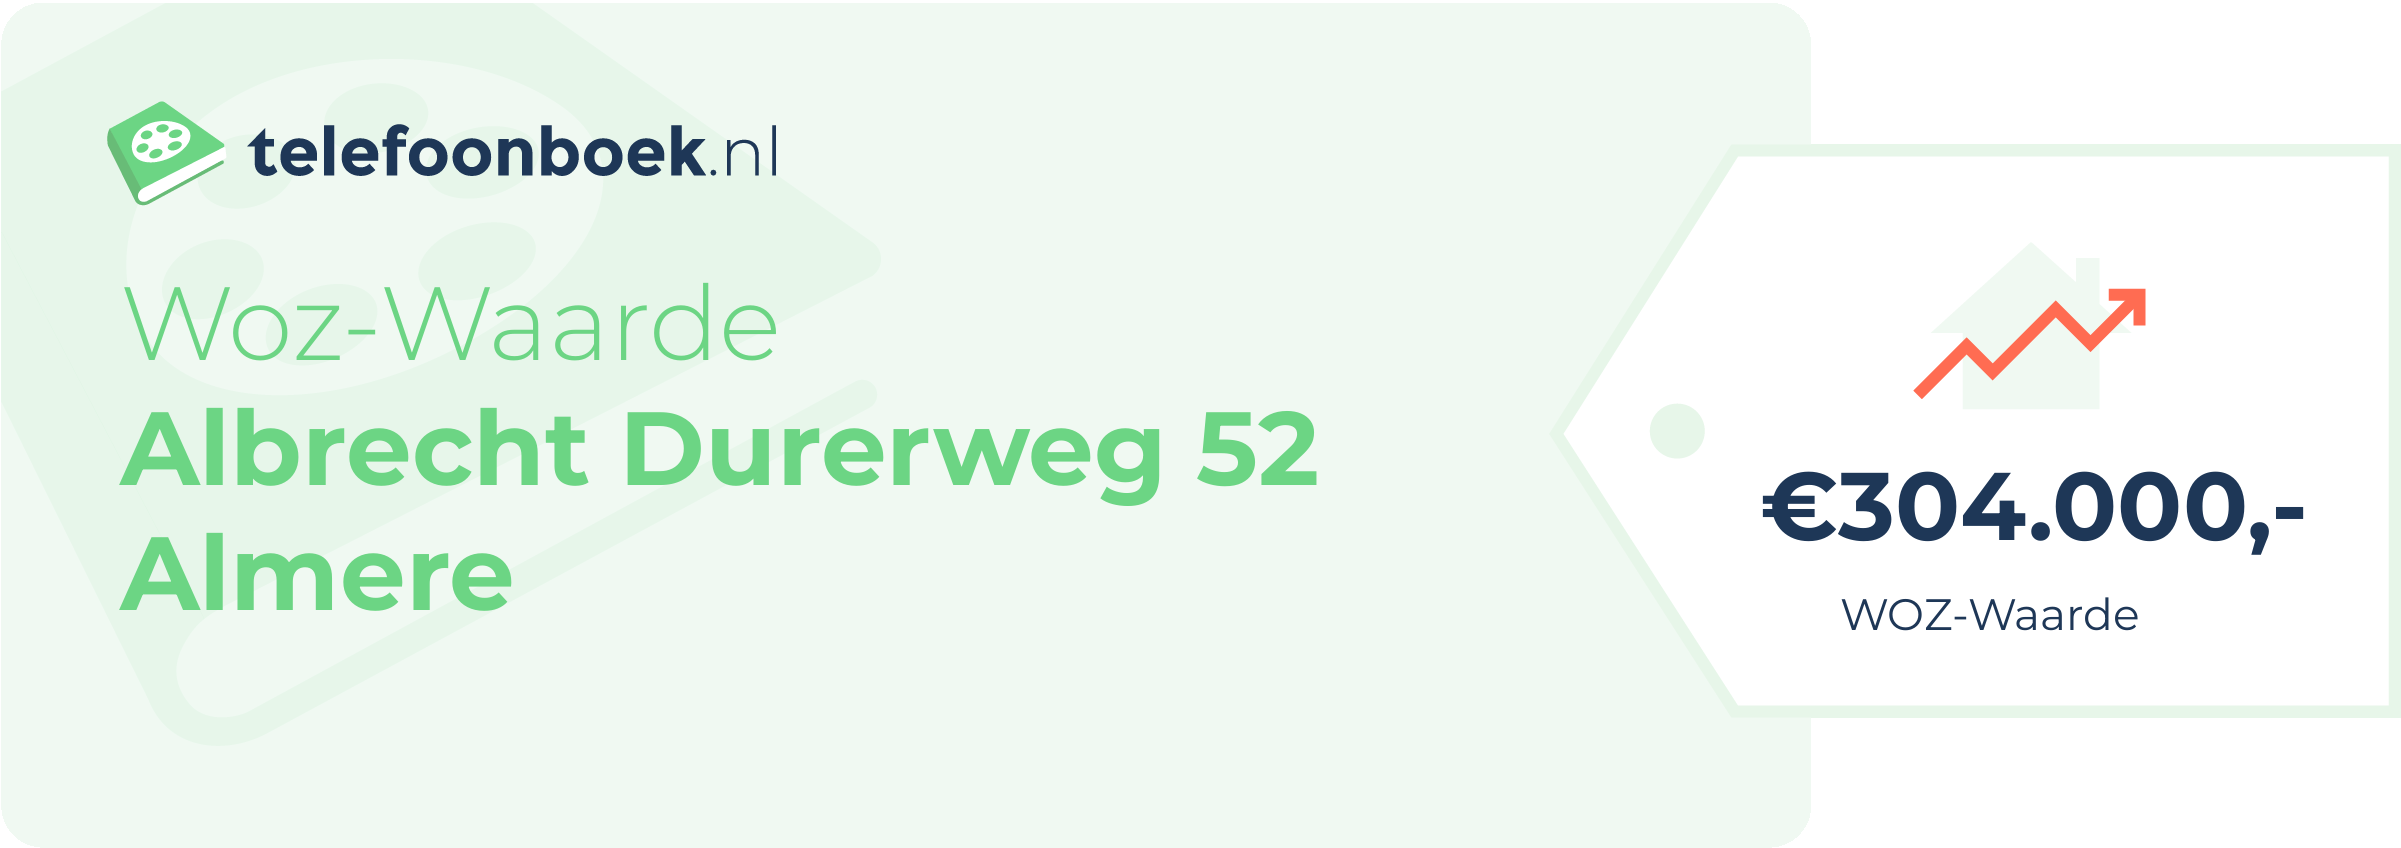 WOZ-waarde Albrecht Durerweg 52 Almere